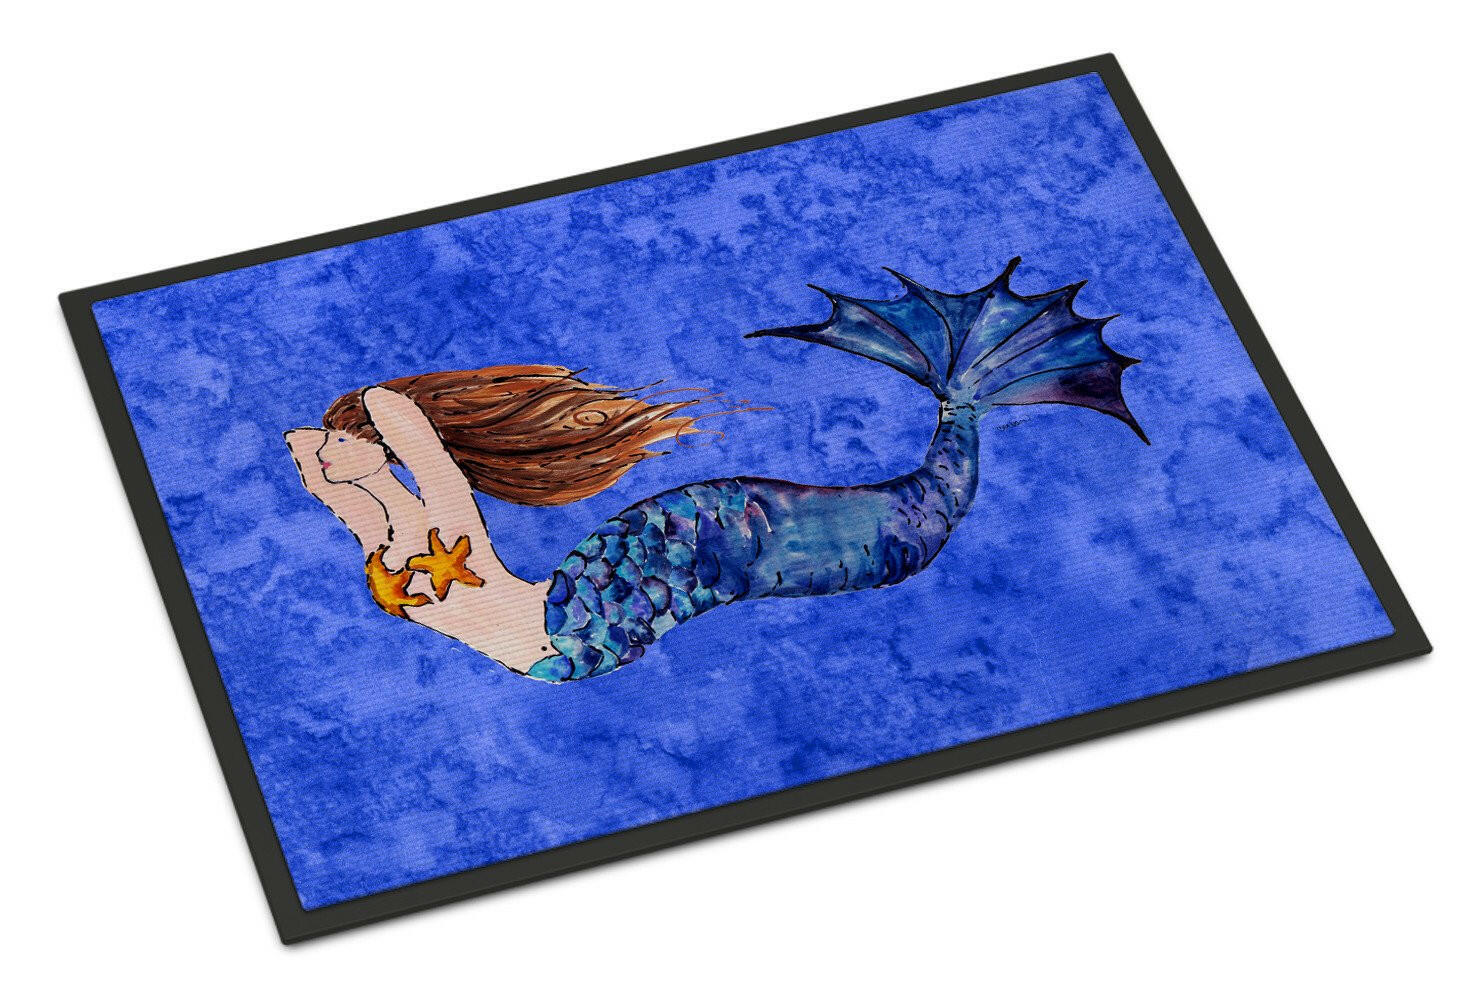 Brunette Mermaid on Blue Indoor or Outdoor Mat 24x36 8725JMAT - the-store.com